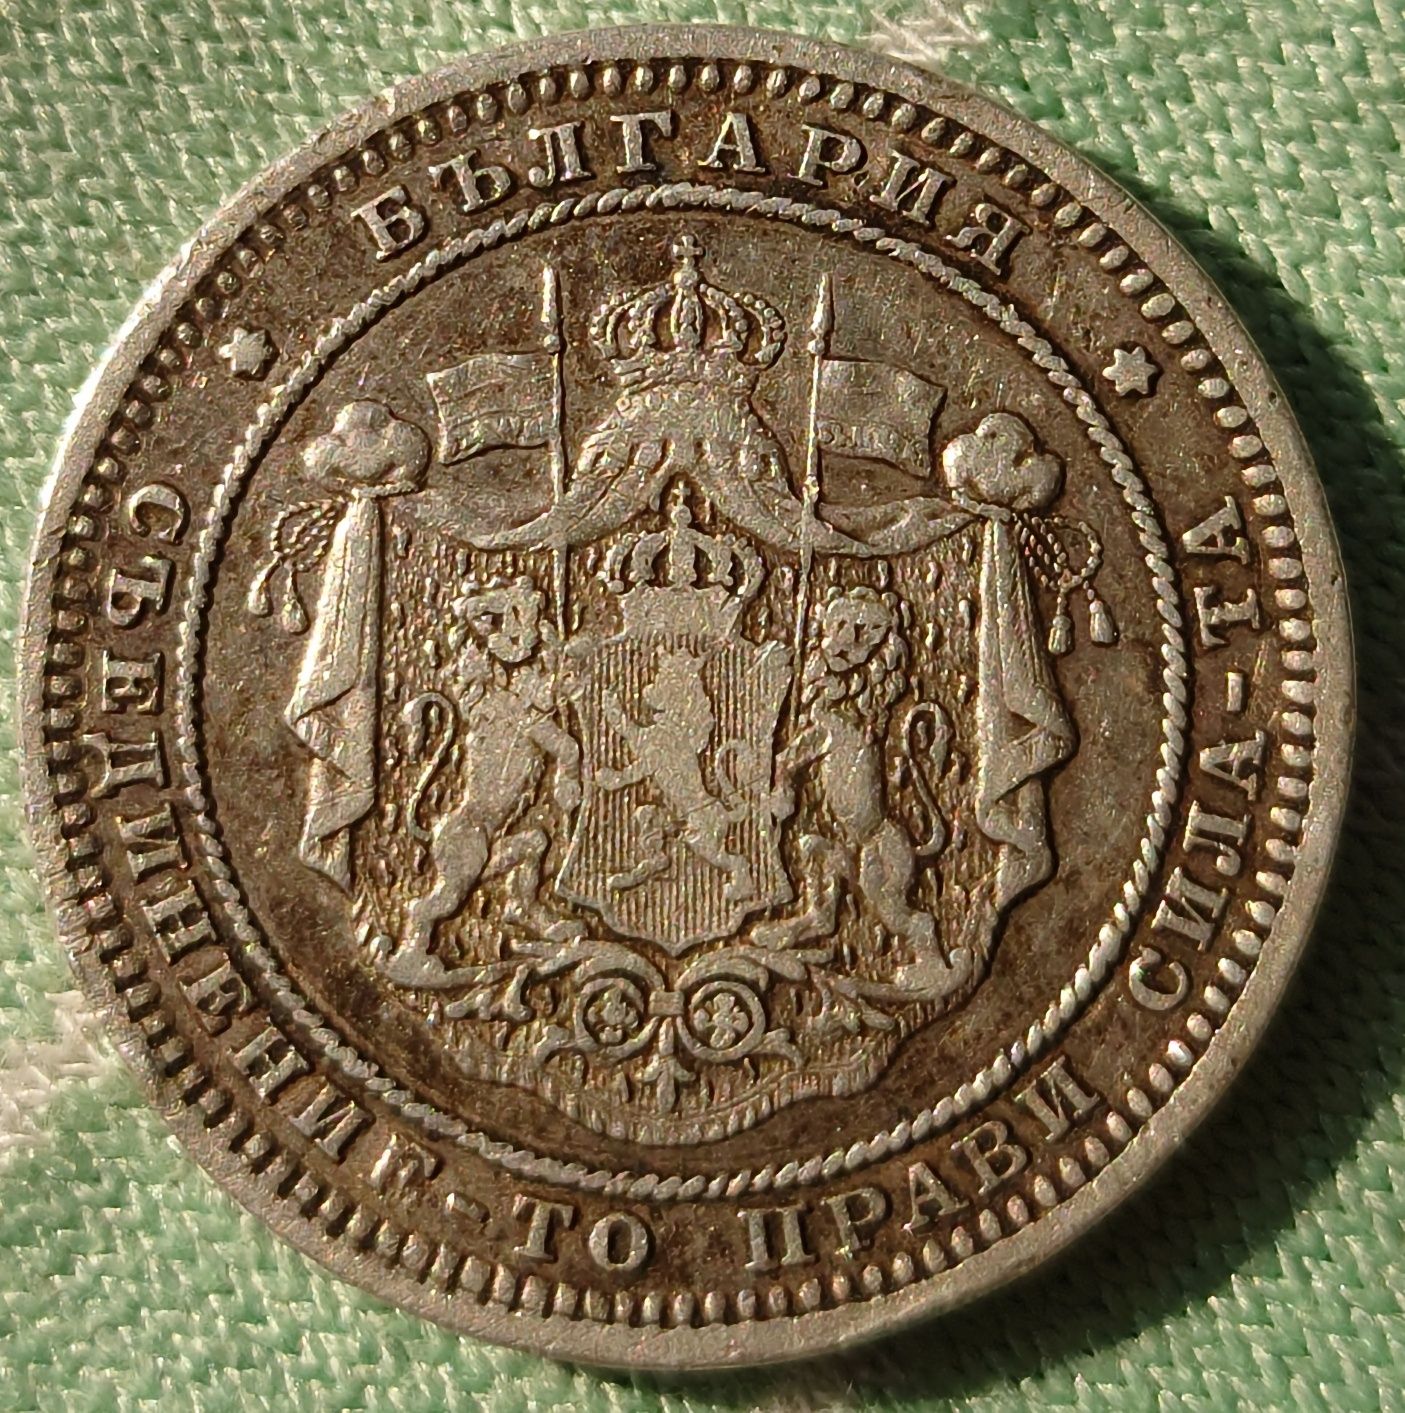 2 лева 1882 сребро